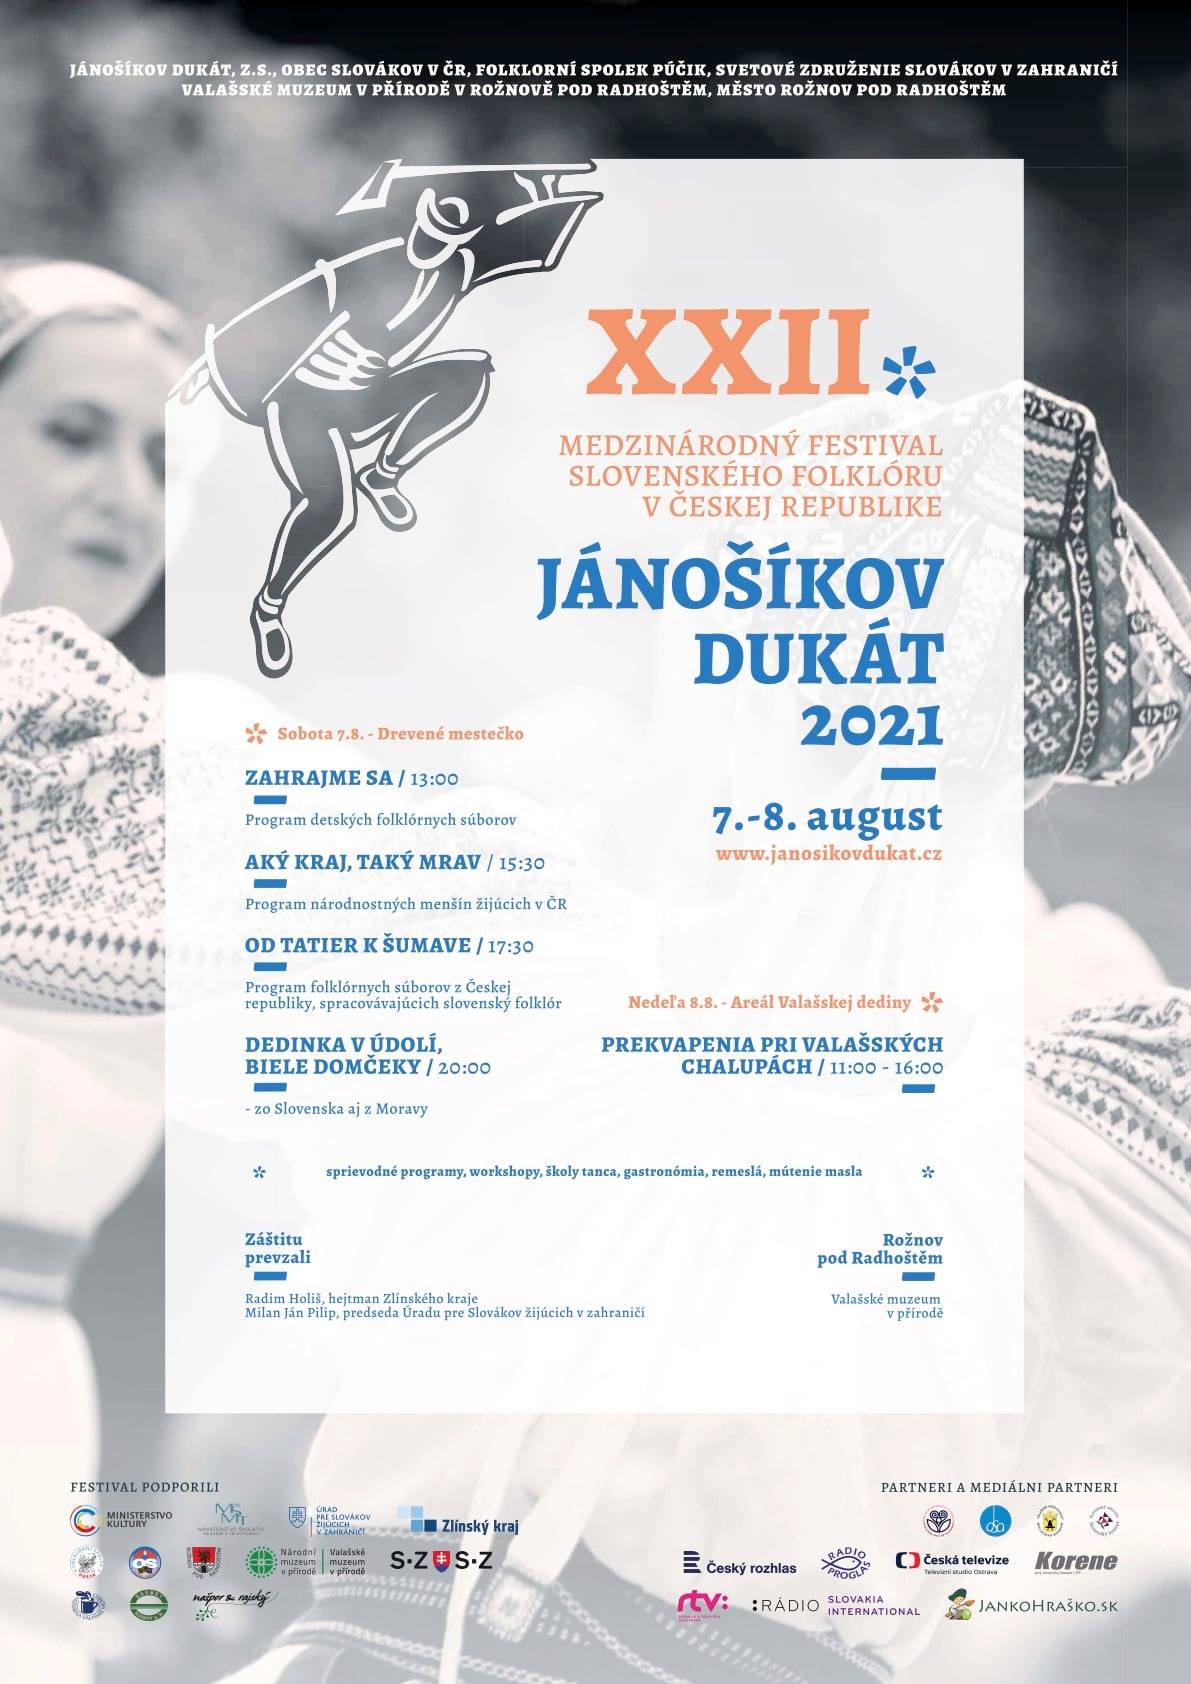 NOVÉ - - - Jánošíkov dukát Rožnov pod Radhoštěm 2021 - 22. ročník medzinárodného festivalu slovenského folklóru 